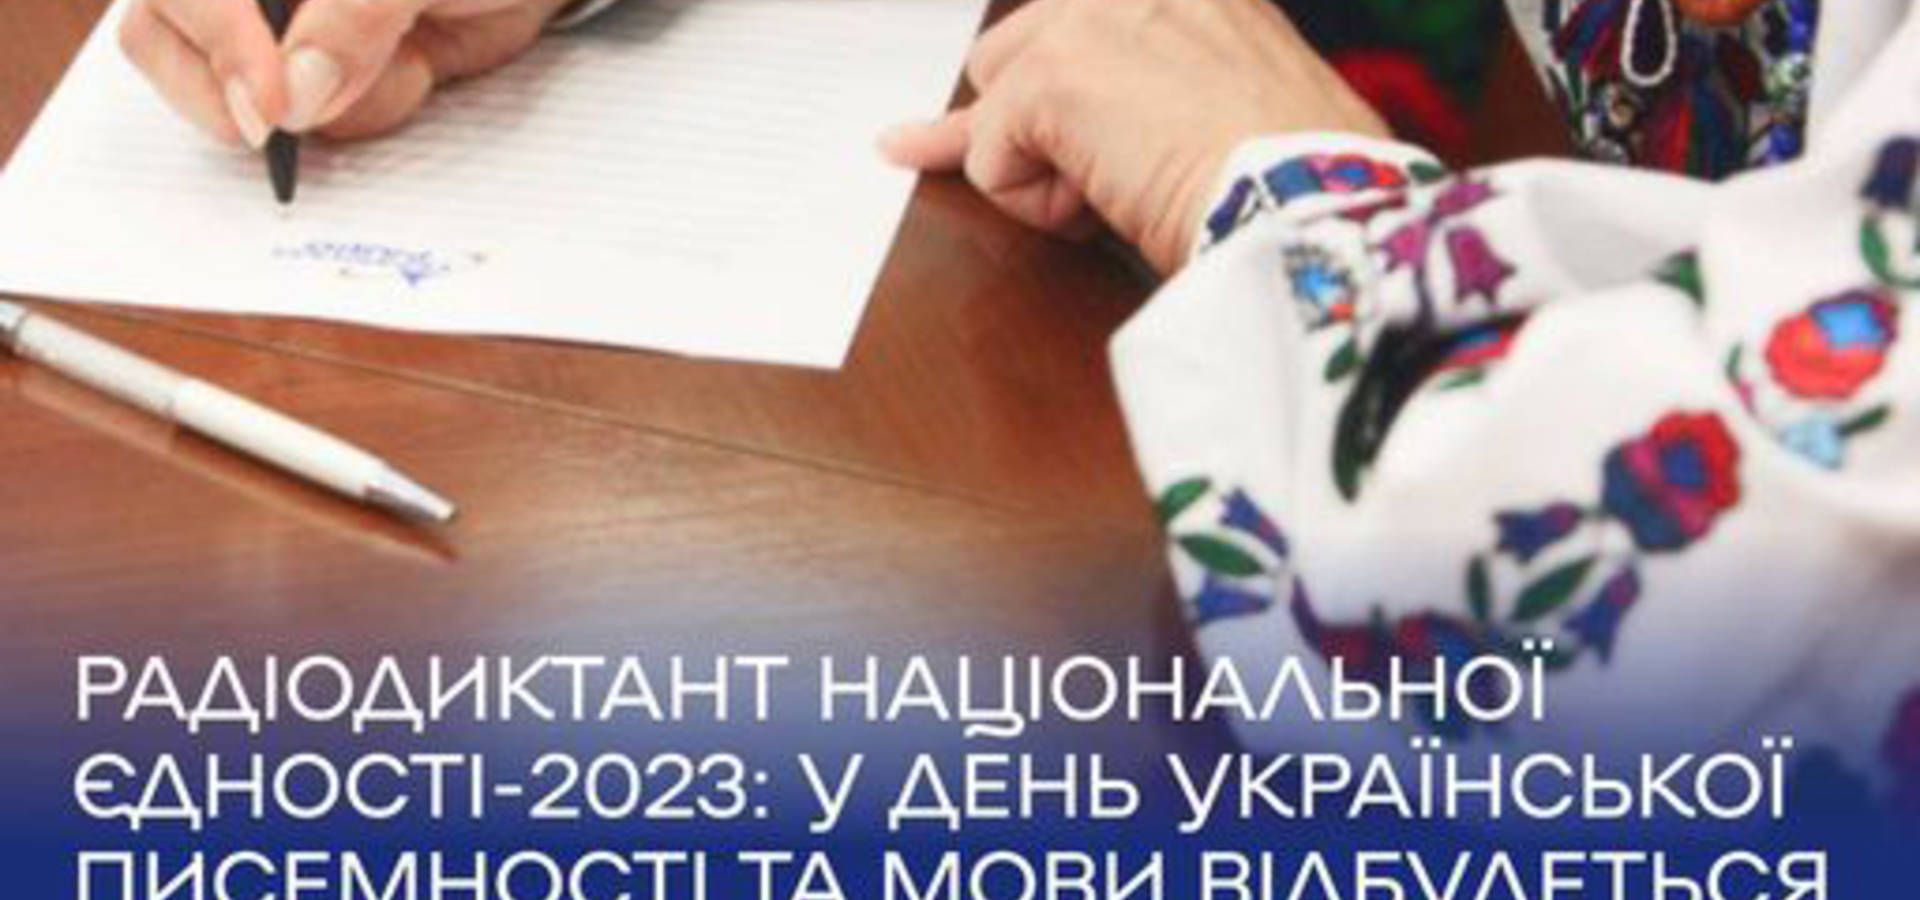 Хмільничани, приєднуйтесь до написання  радіодиктанту національної єдності-2023!